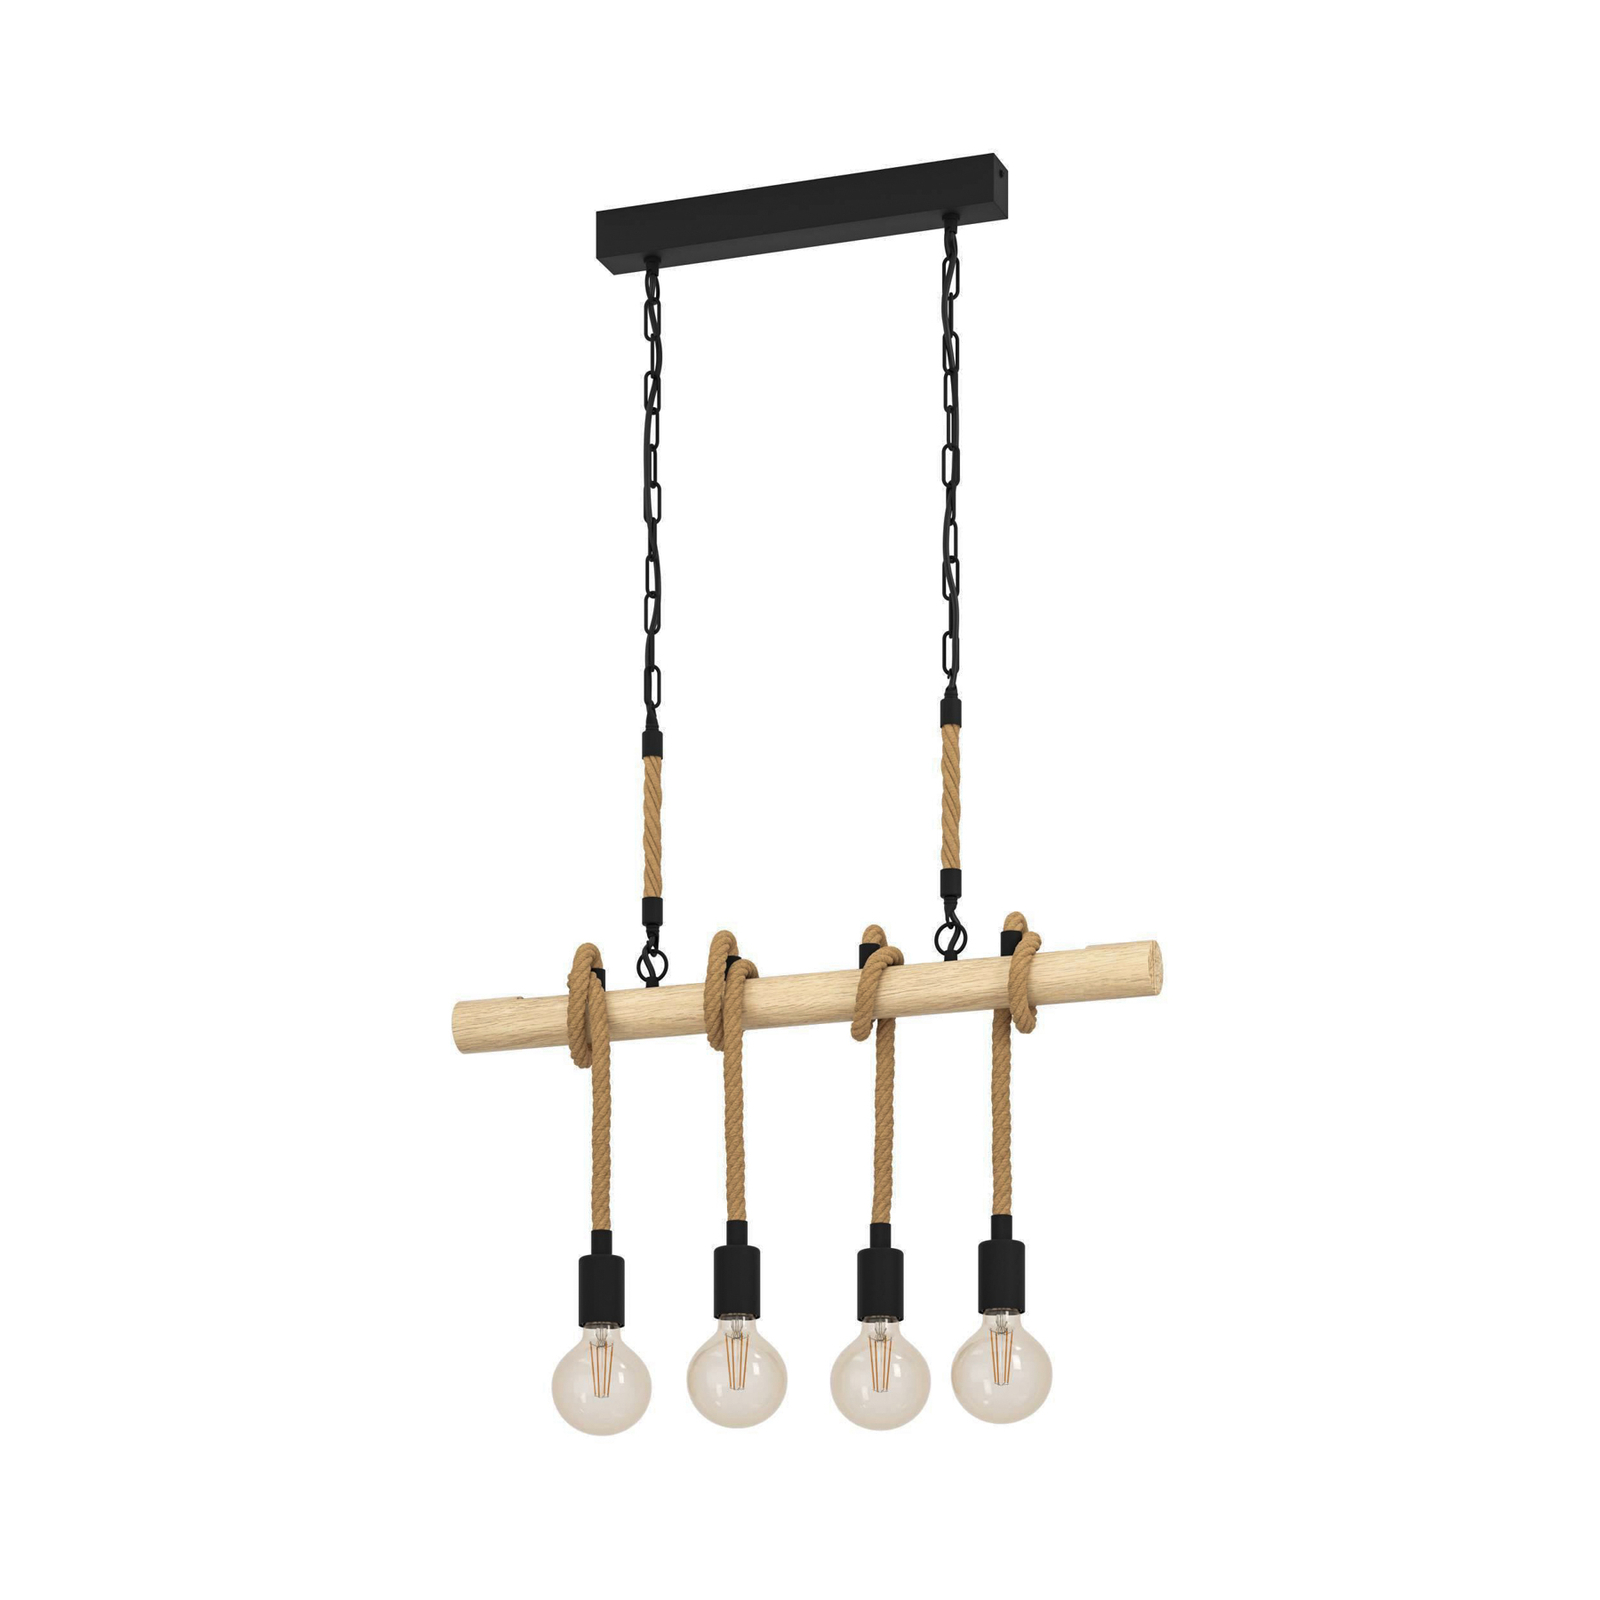 Youngstown hanglamp, lengte 70 cm, zwart/bruin, 4-lamps.